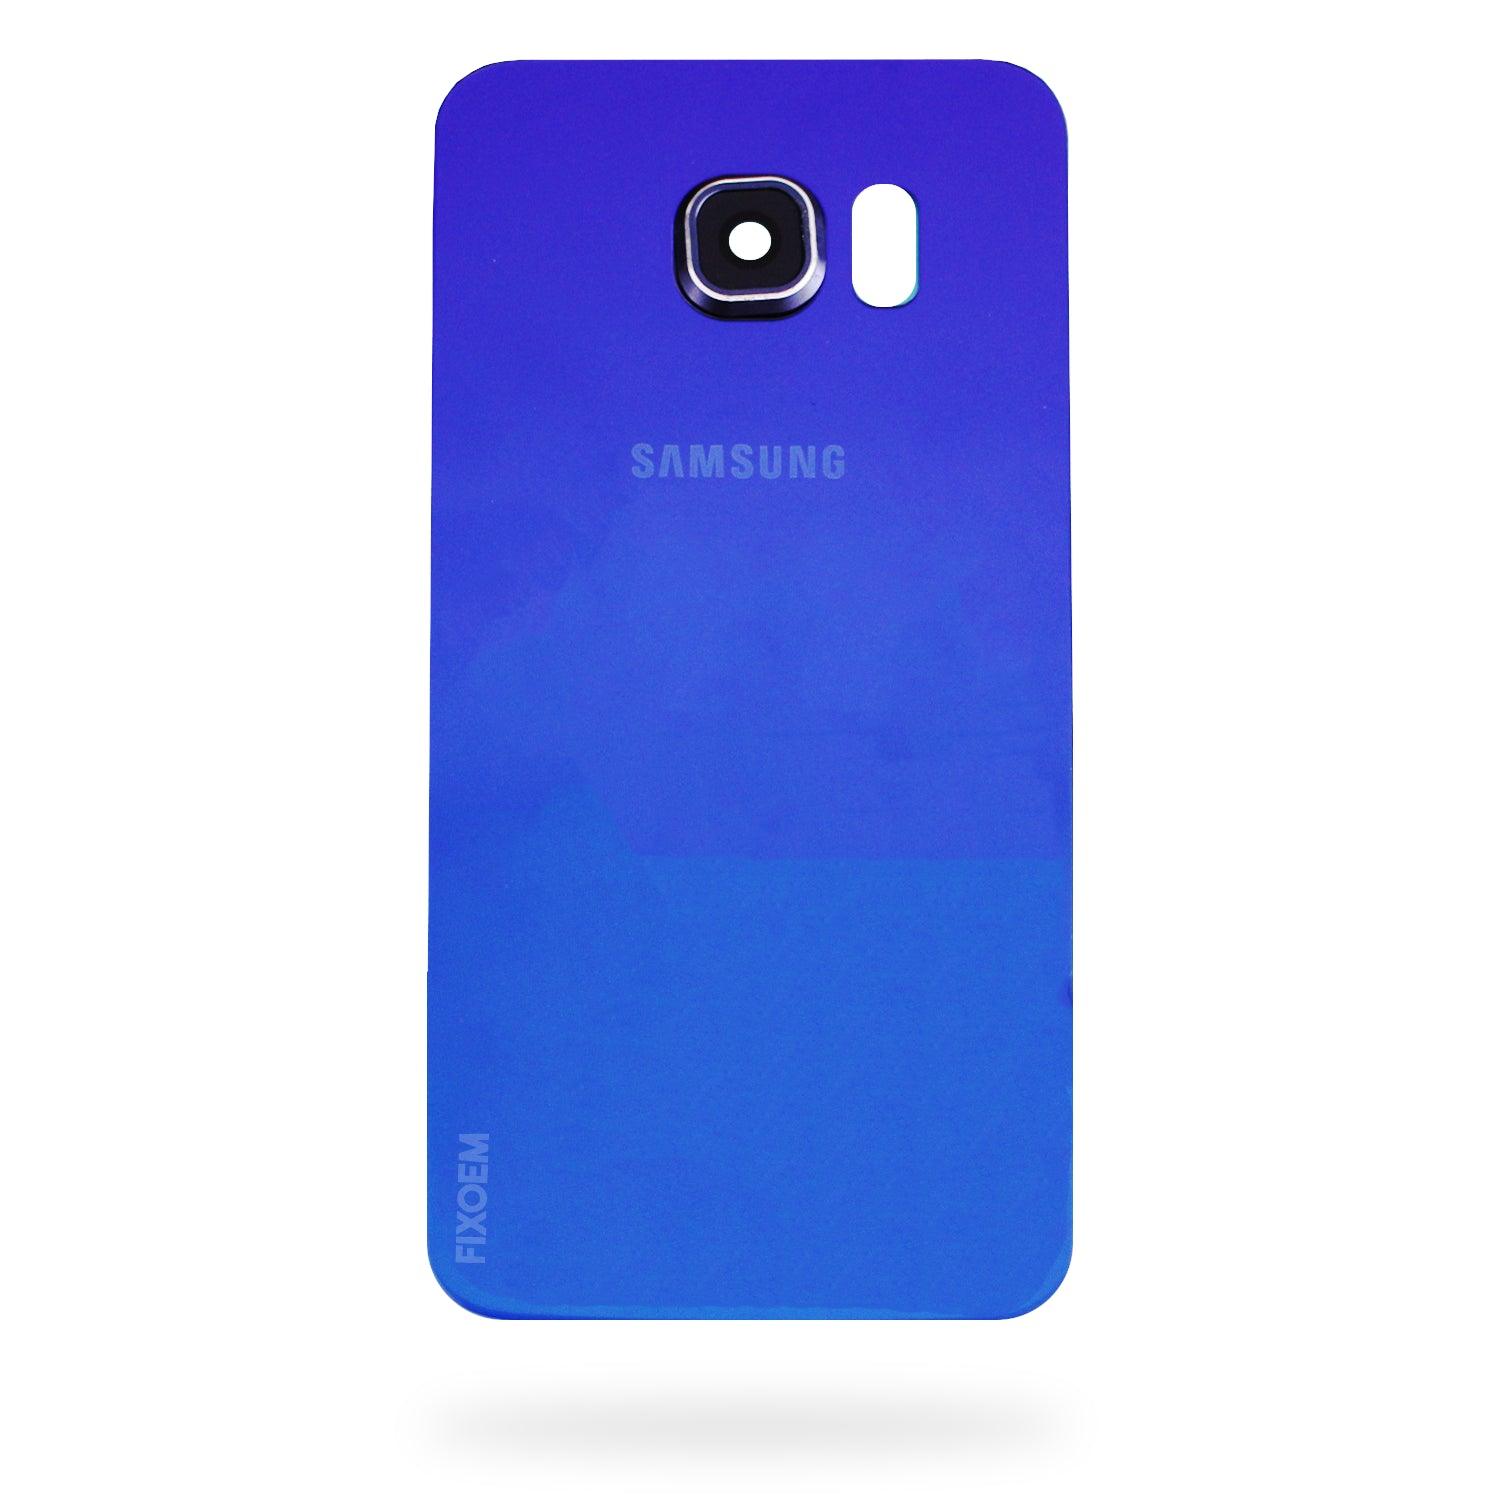 Tapa Trasera Samsung S6 Edge G925A G925F a solo $ 70.00 Refaccion y puestos celulares, refurbish y microelectronica.- FixOEM